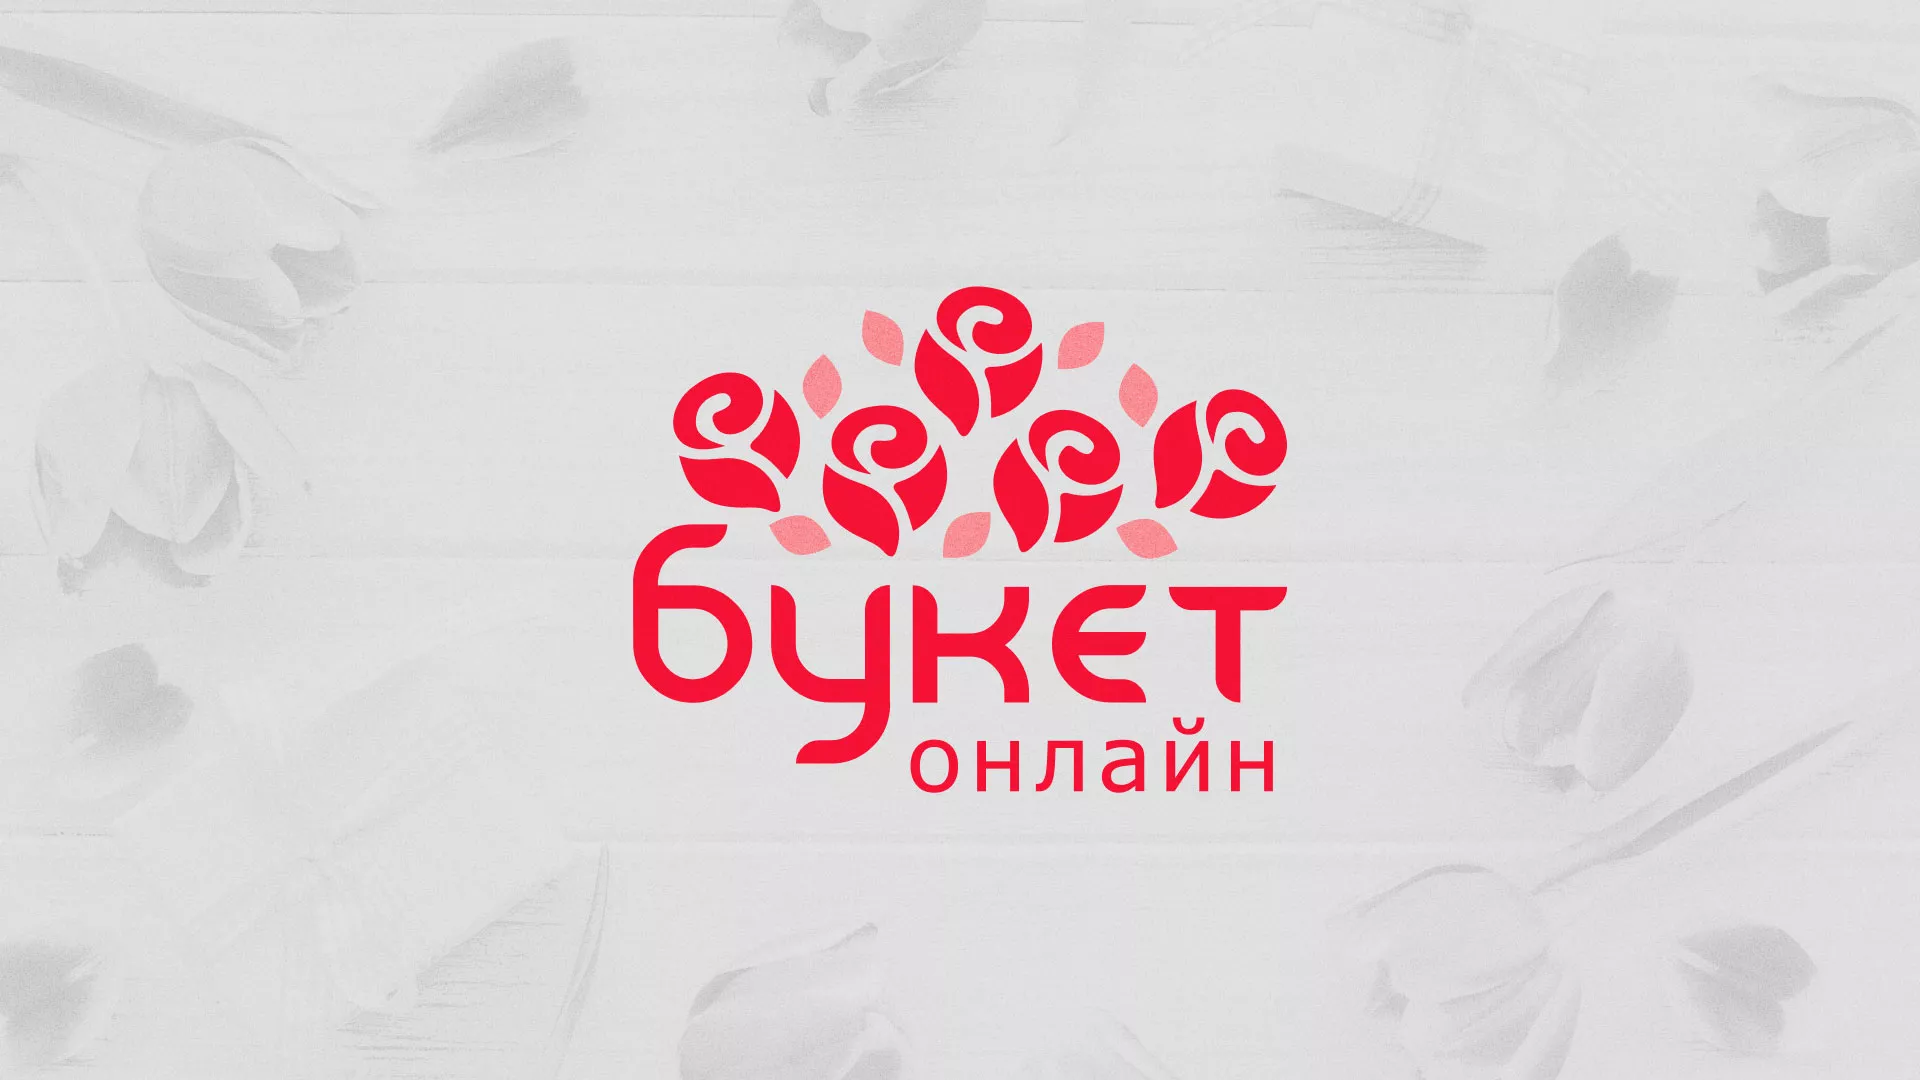 Создание интернет-магазина «Букет-онлайн» по цветам в Белом